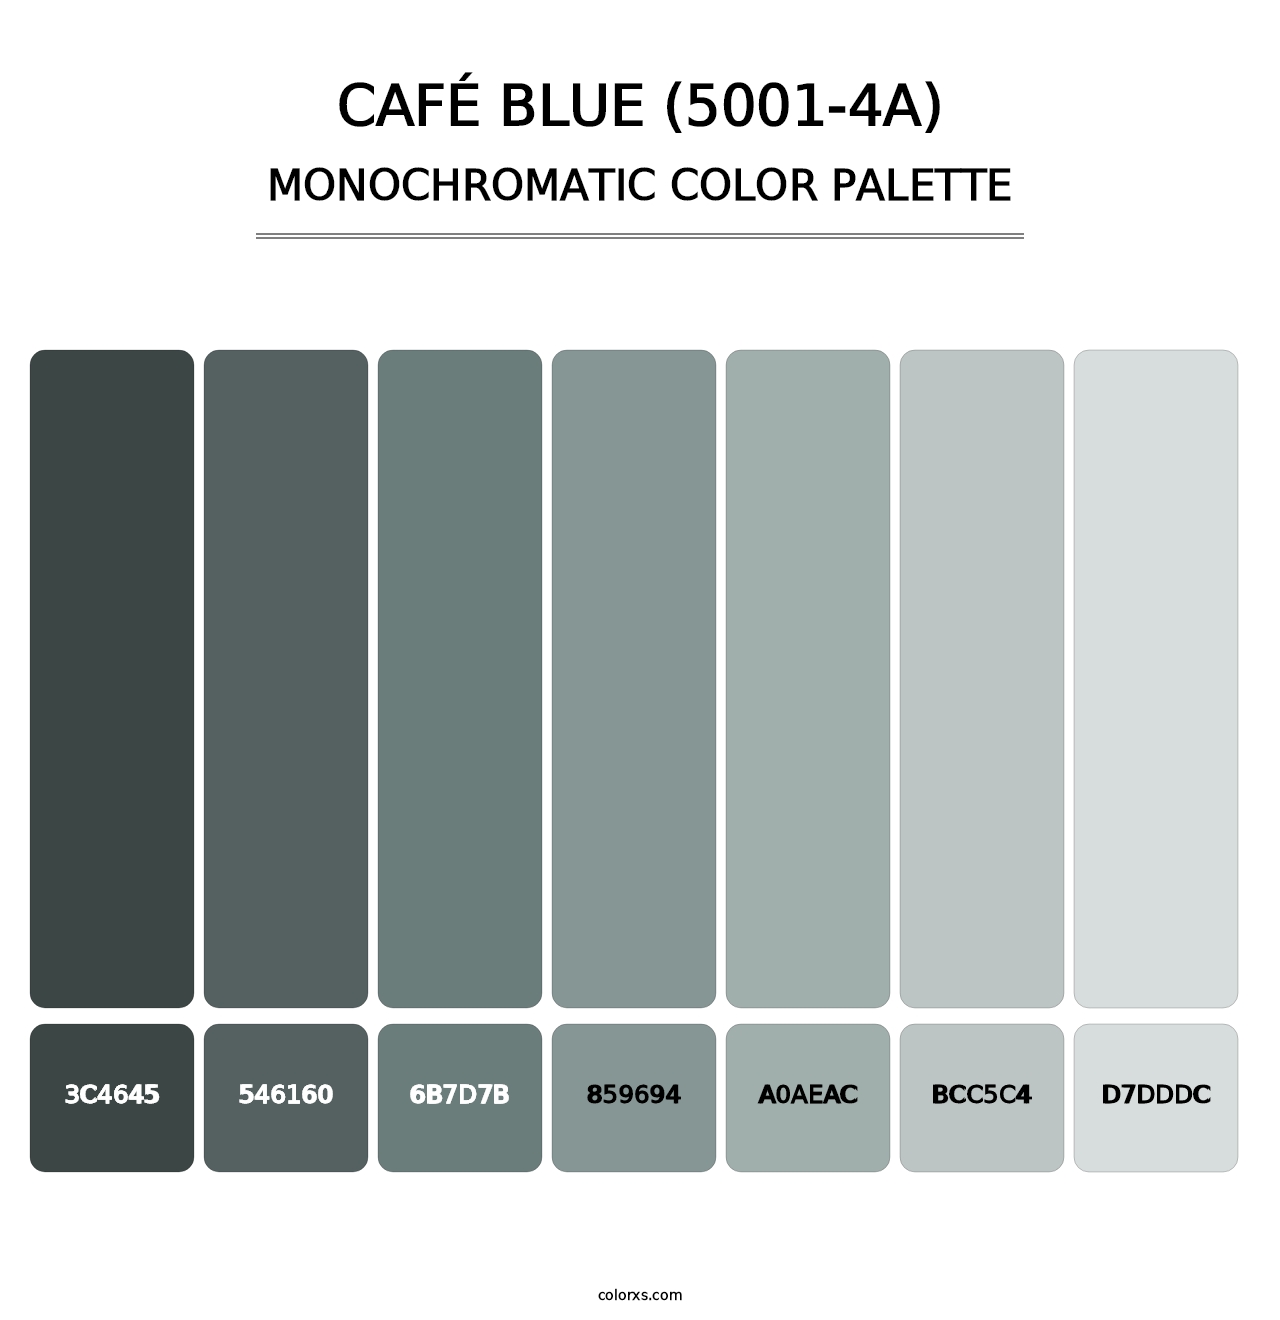 Café Blue (5001-4A) - Monochromatic Color Palette